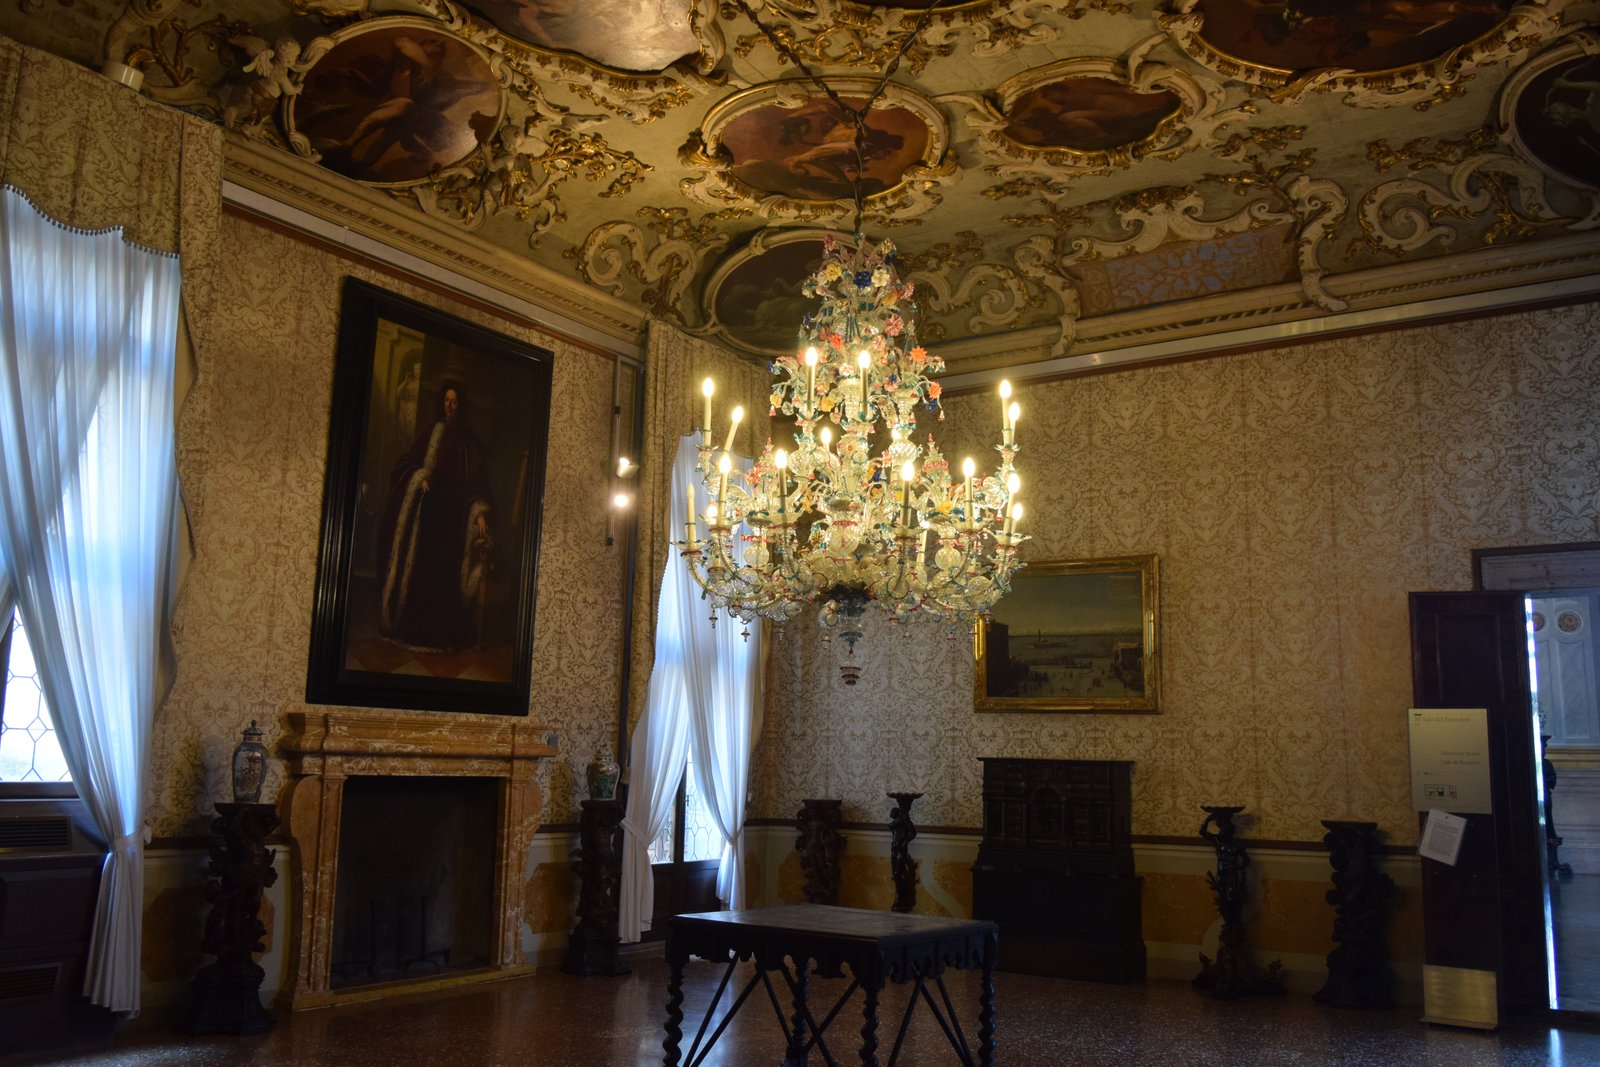 Ca' Rezzonico museum, Venice, Italy